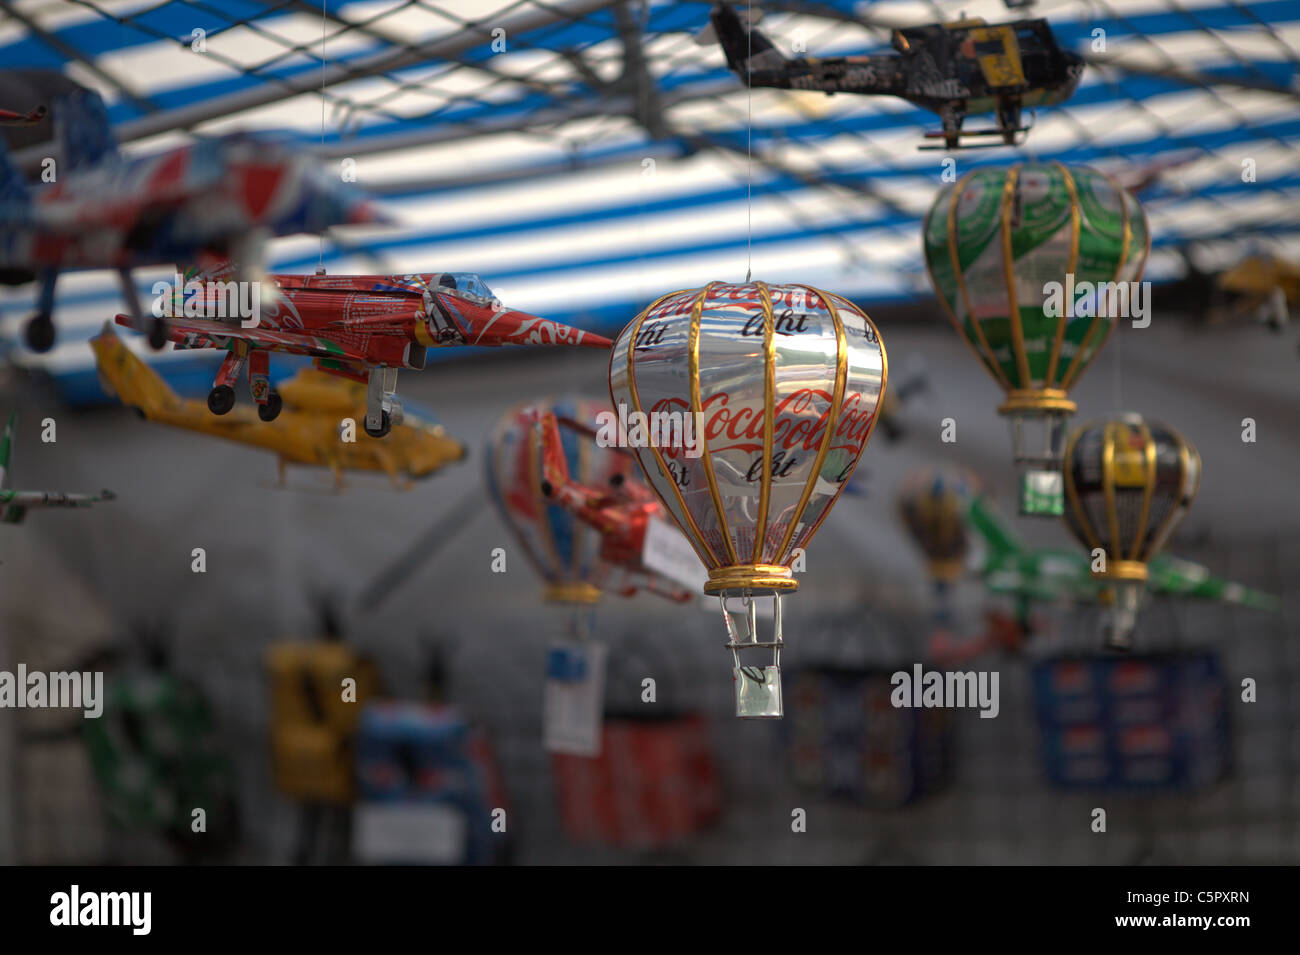 Miniatur Metall Ballon aus recycelten Blechdosen gemacht Stockfoto